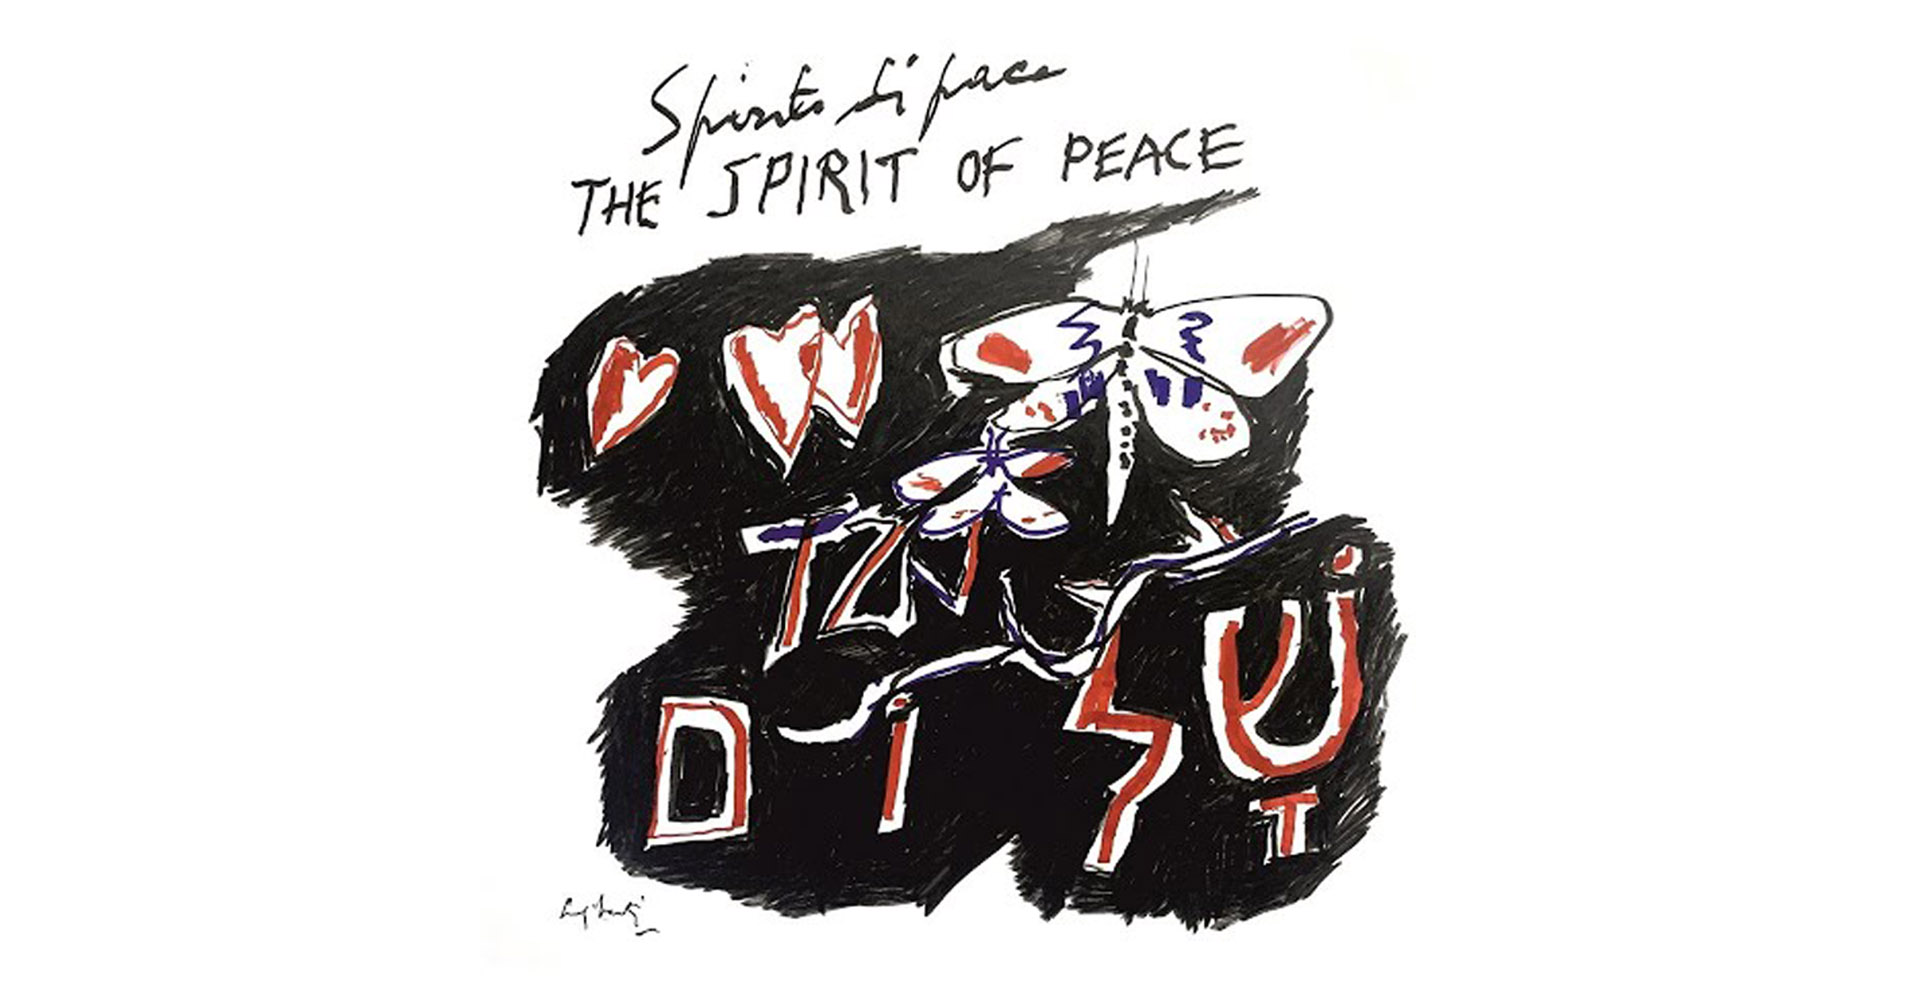 Spirit of peace: tra jazz e klezmer